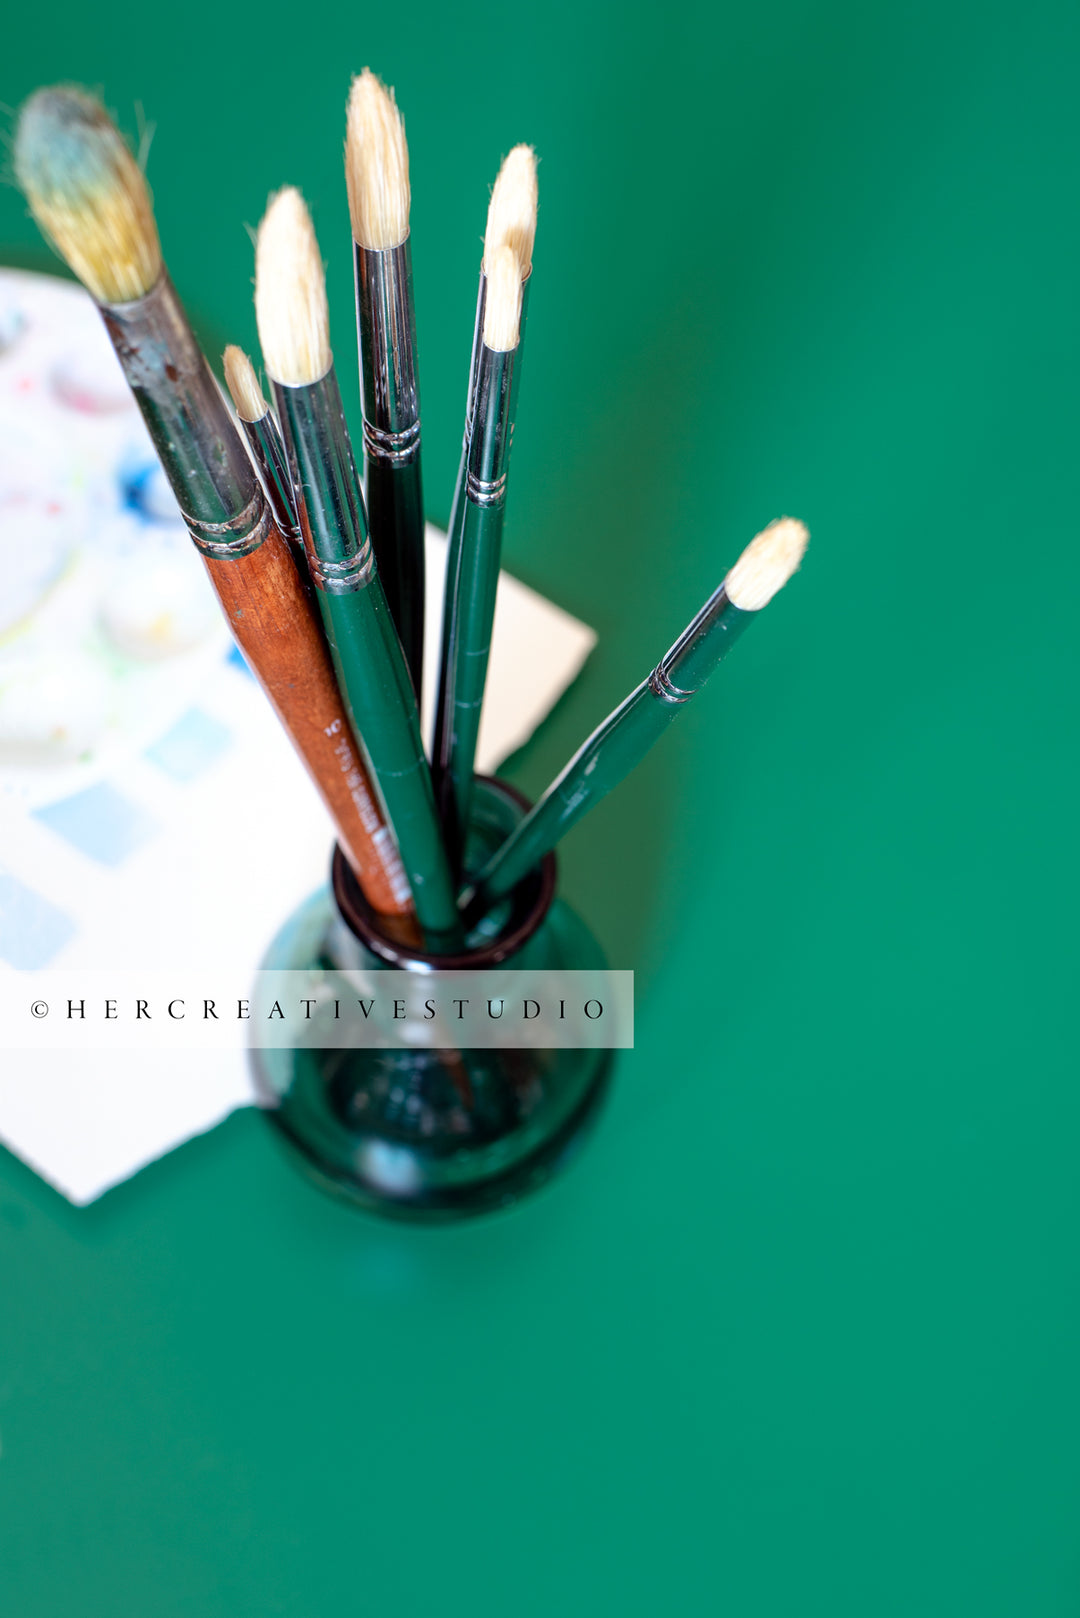 Paintbrushes on Green Background. Styled Stock Image